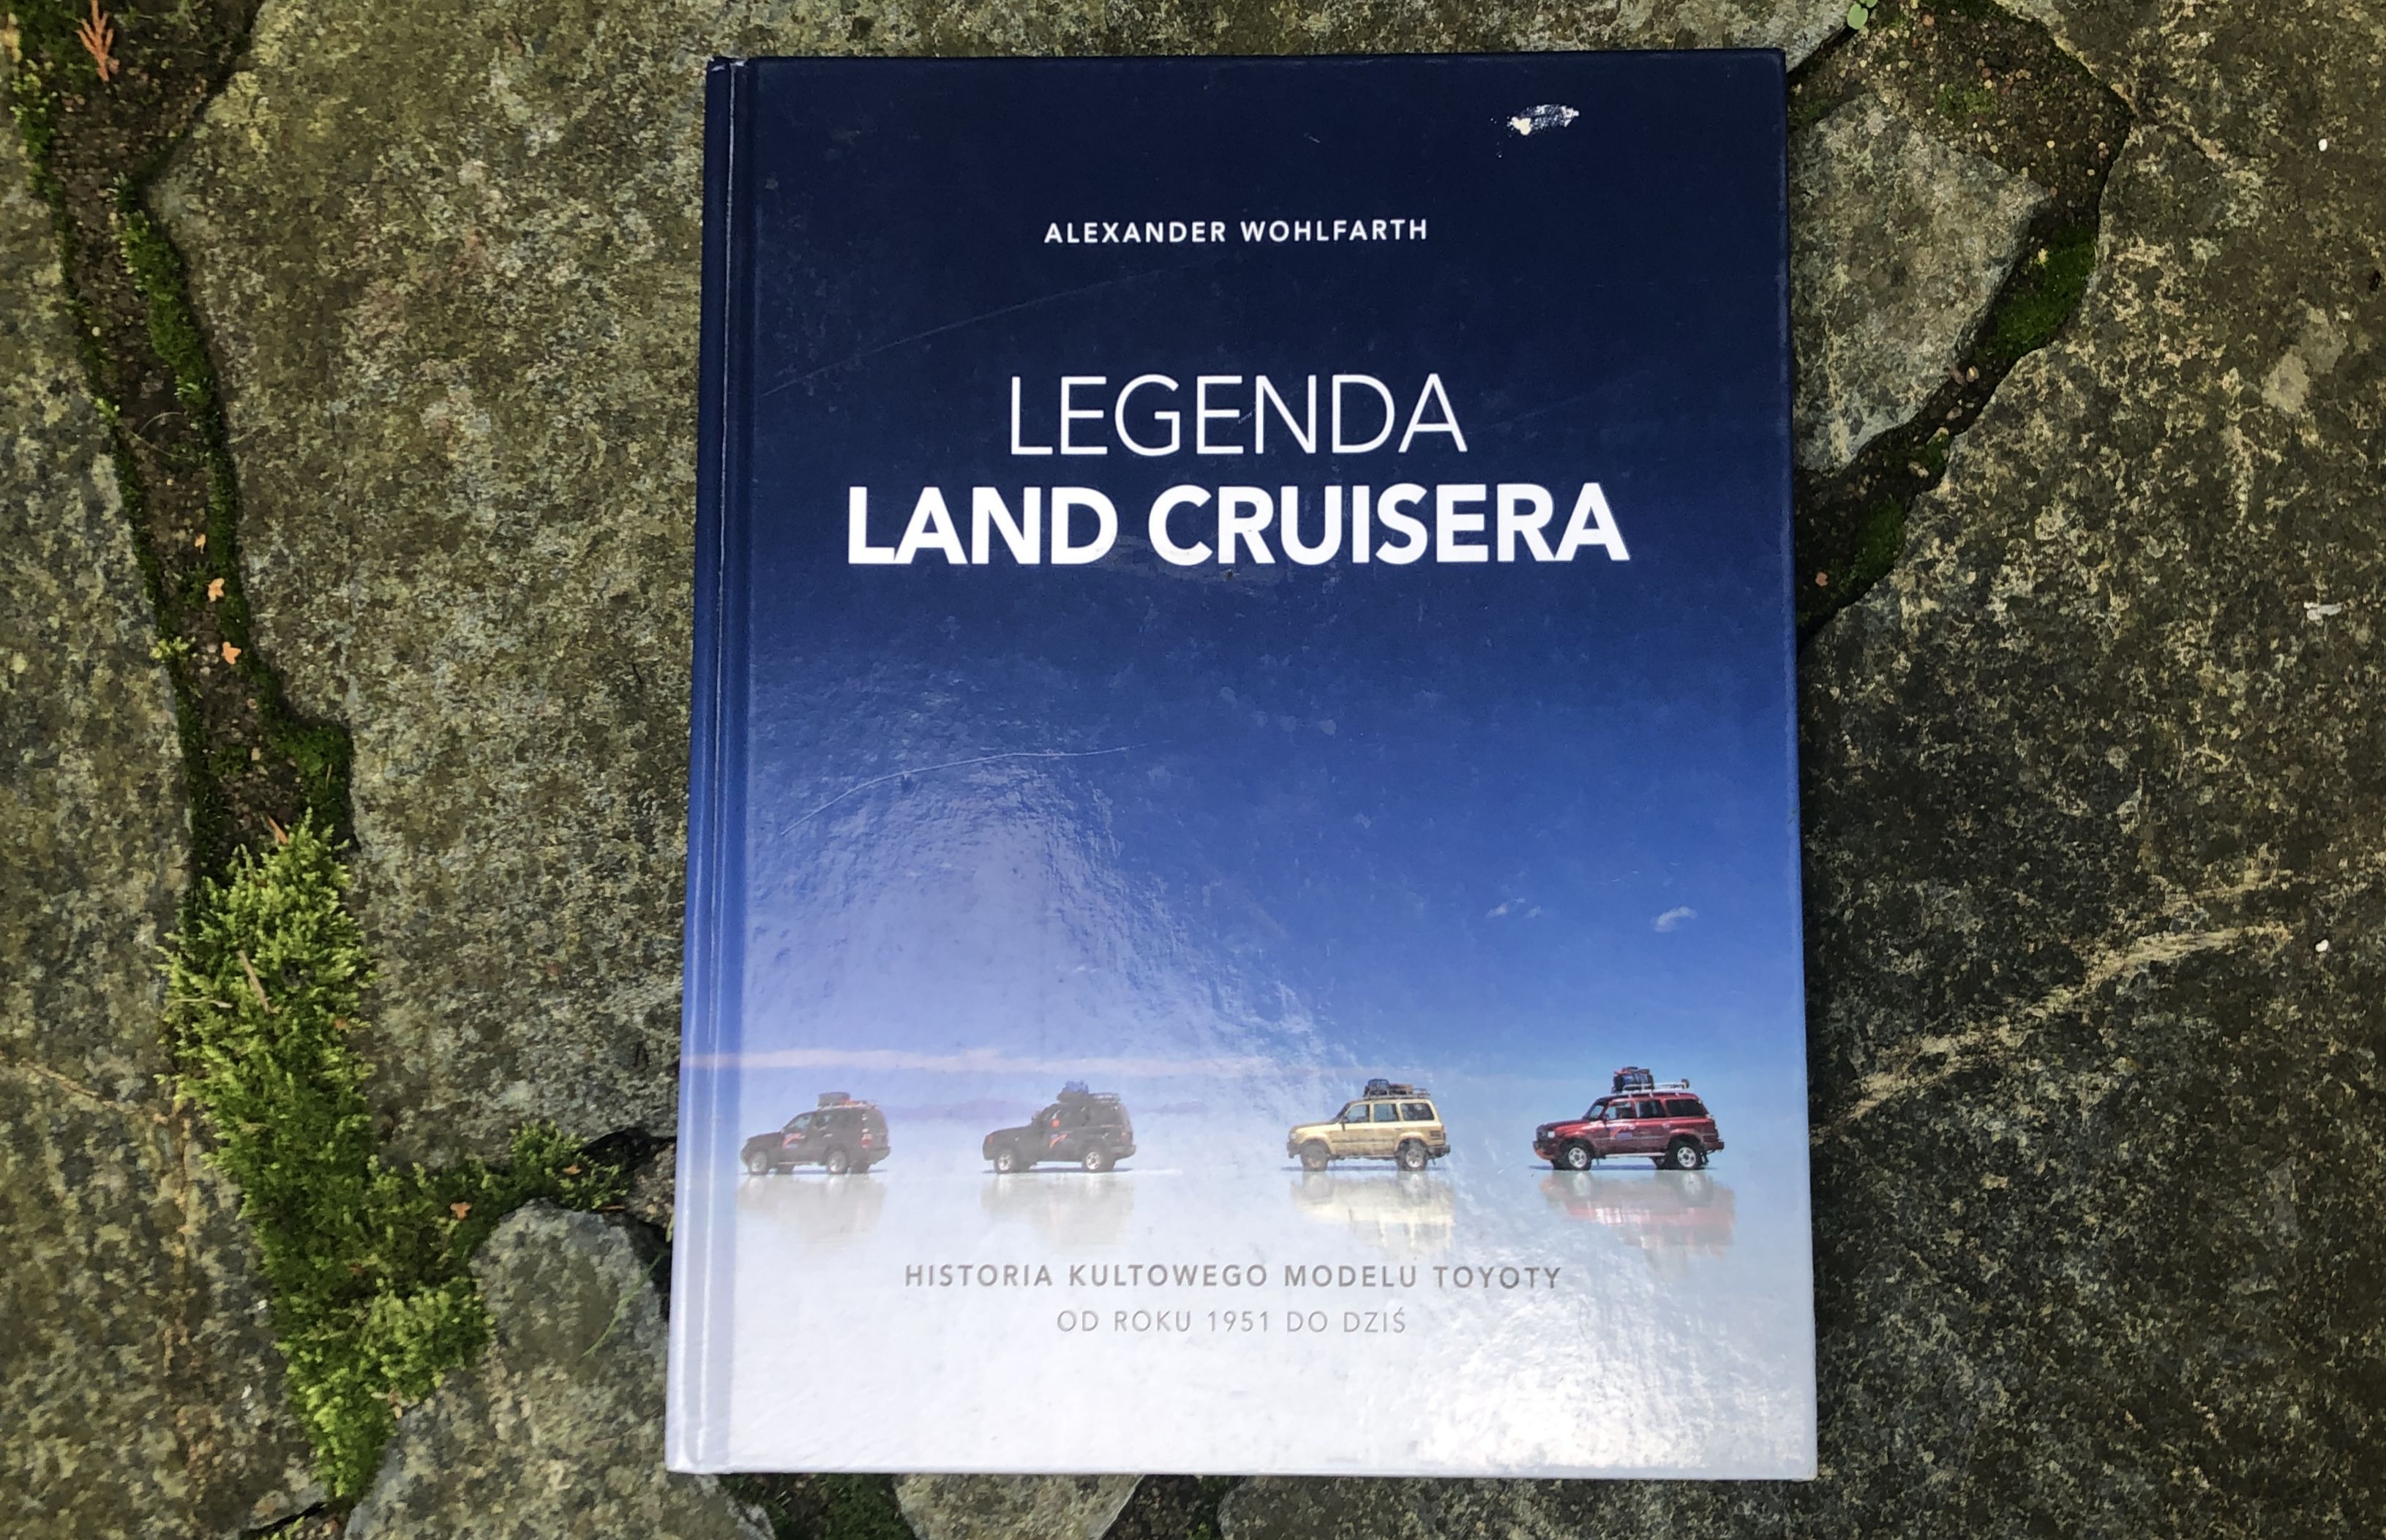 Alexander Wohlfarth "Legenda Land Cruisera"